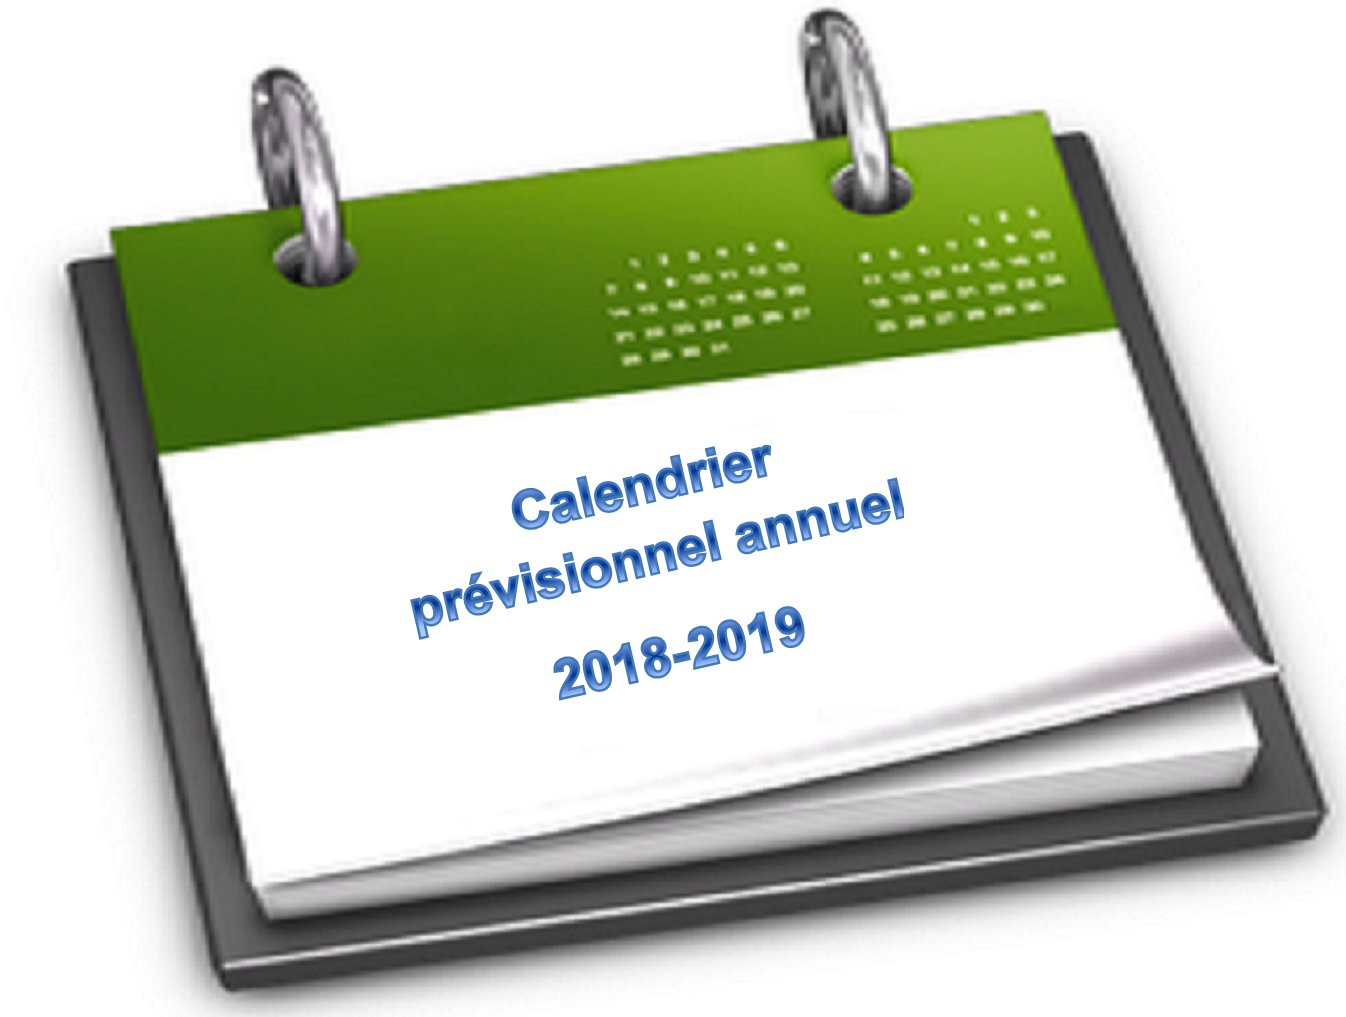 Calendrier prévisionnel annuel 2018-2019